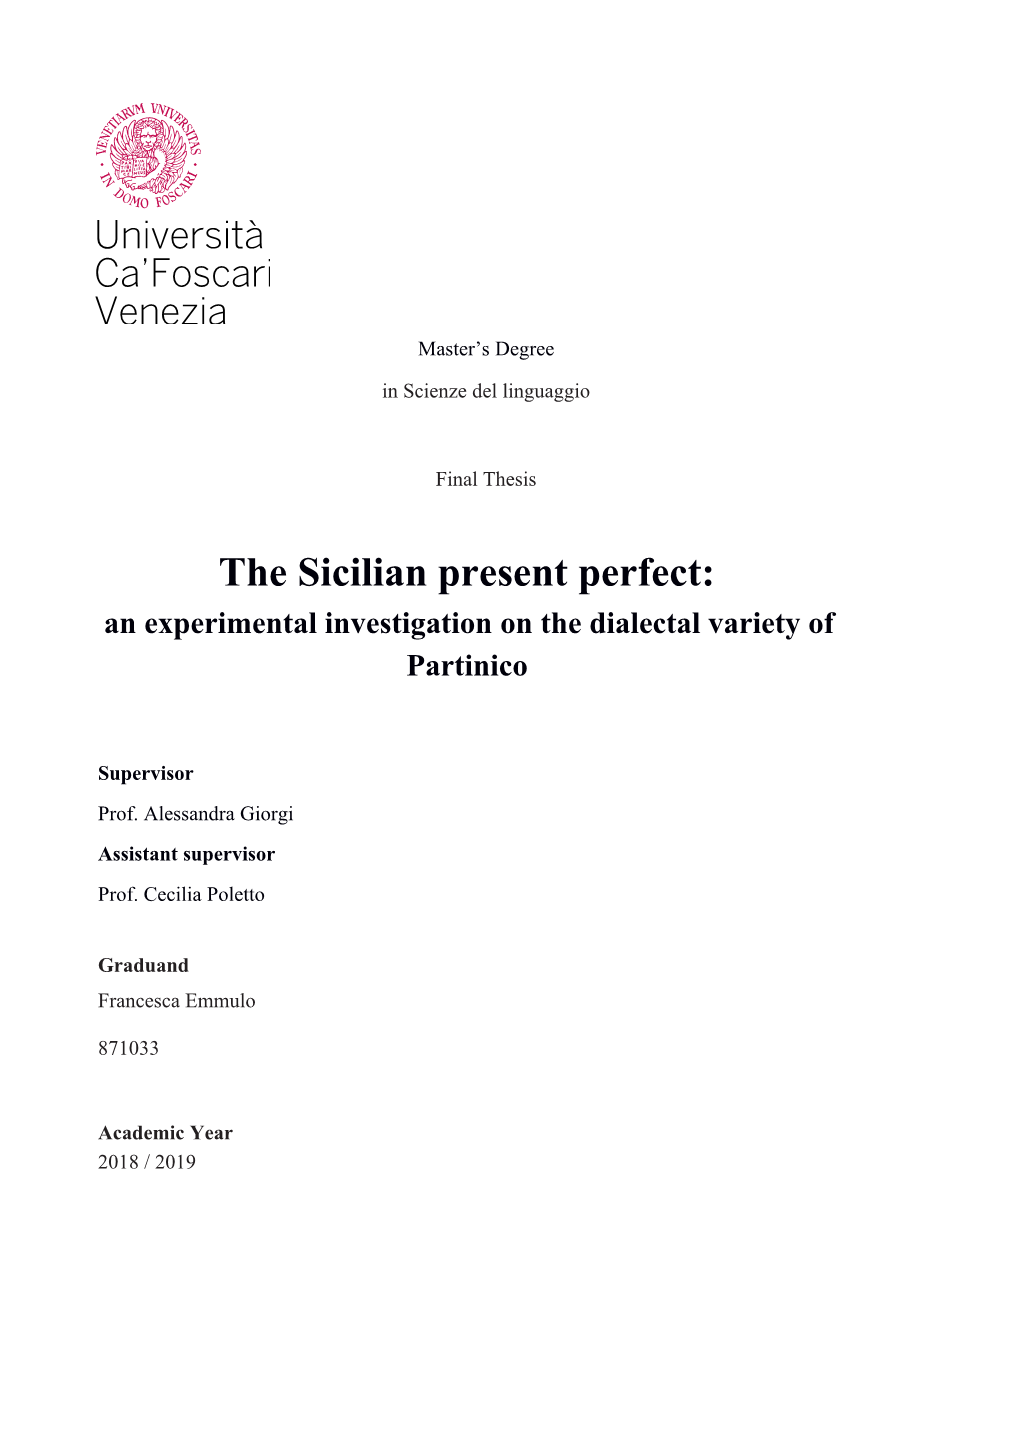 The Sicilian Present Perfect